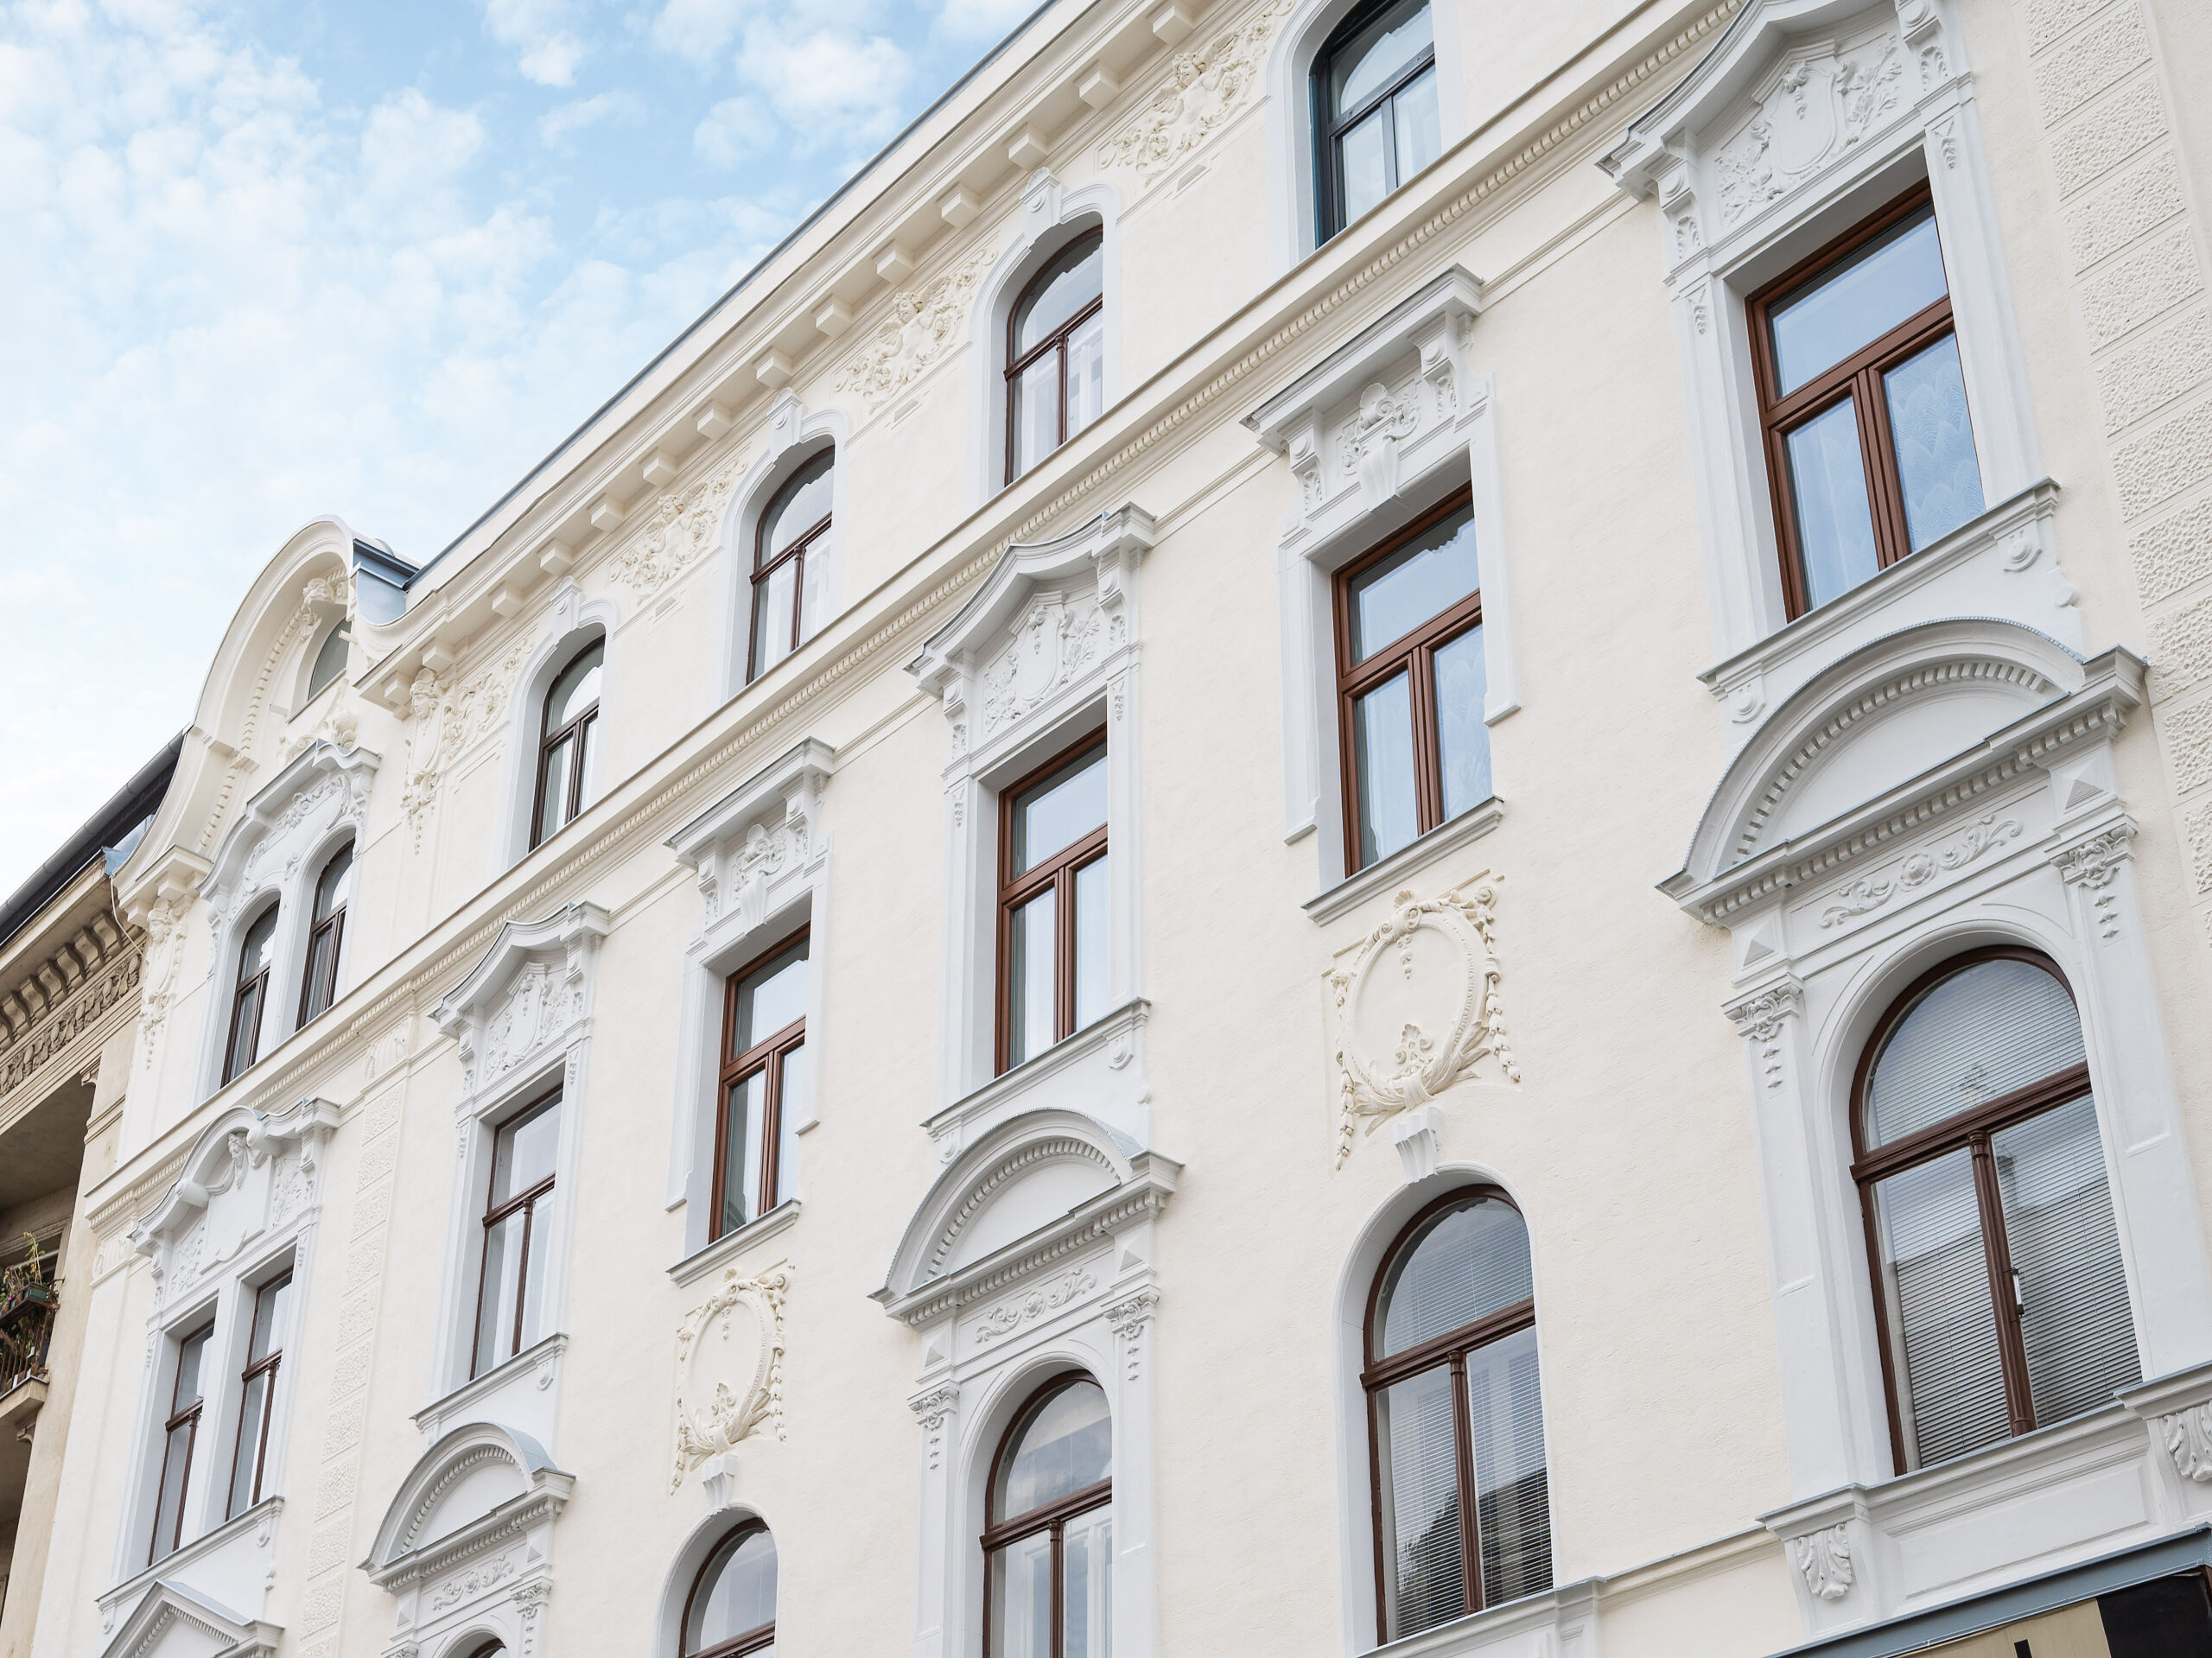 Wunderschöne Fassade im typischen Wien Charme nach der liebevollen Sanierung durch die 3SI Immogroup.